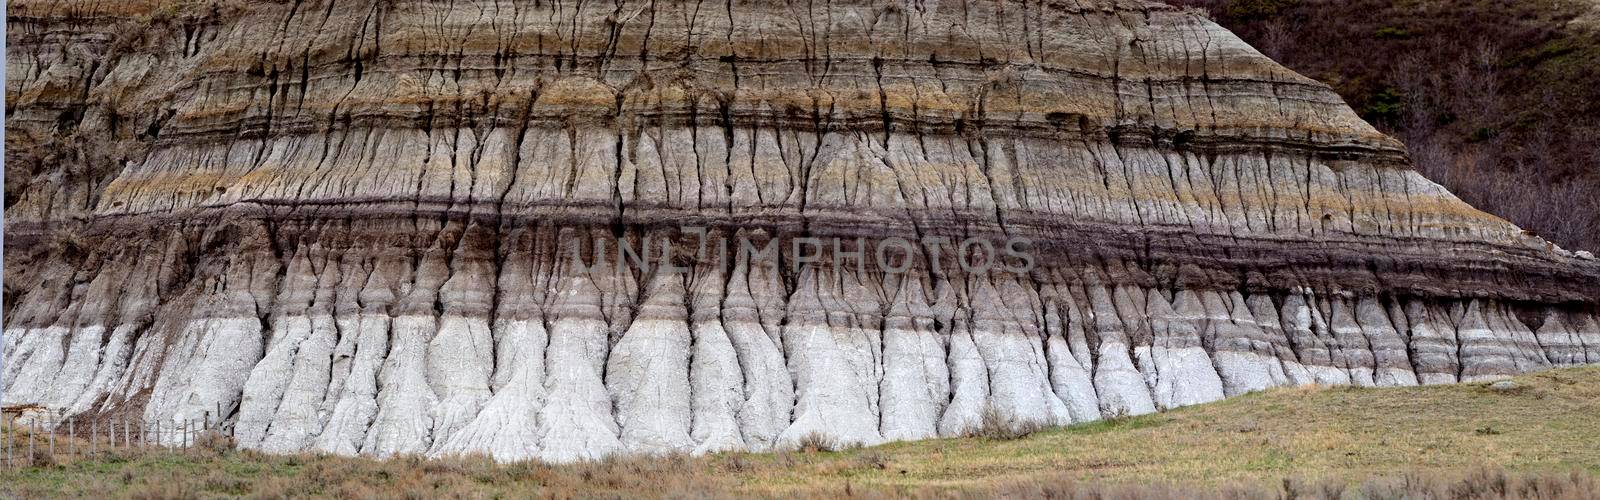 Saskatchewan Canada Badlands Big Muddy Formations Scenic